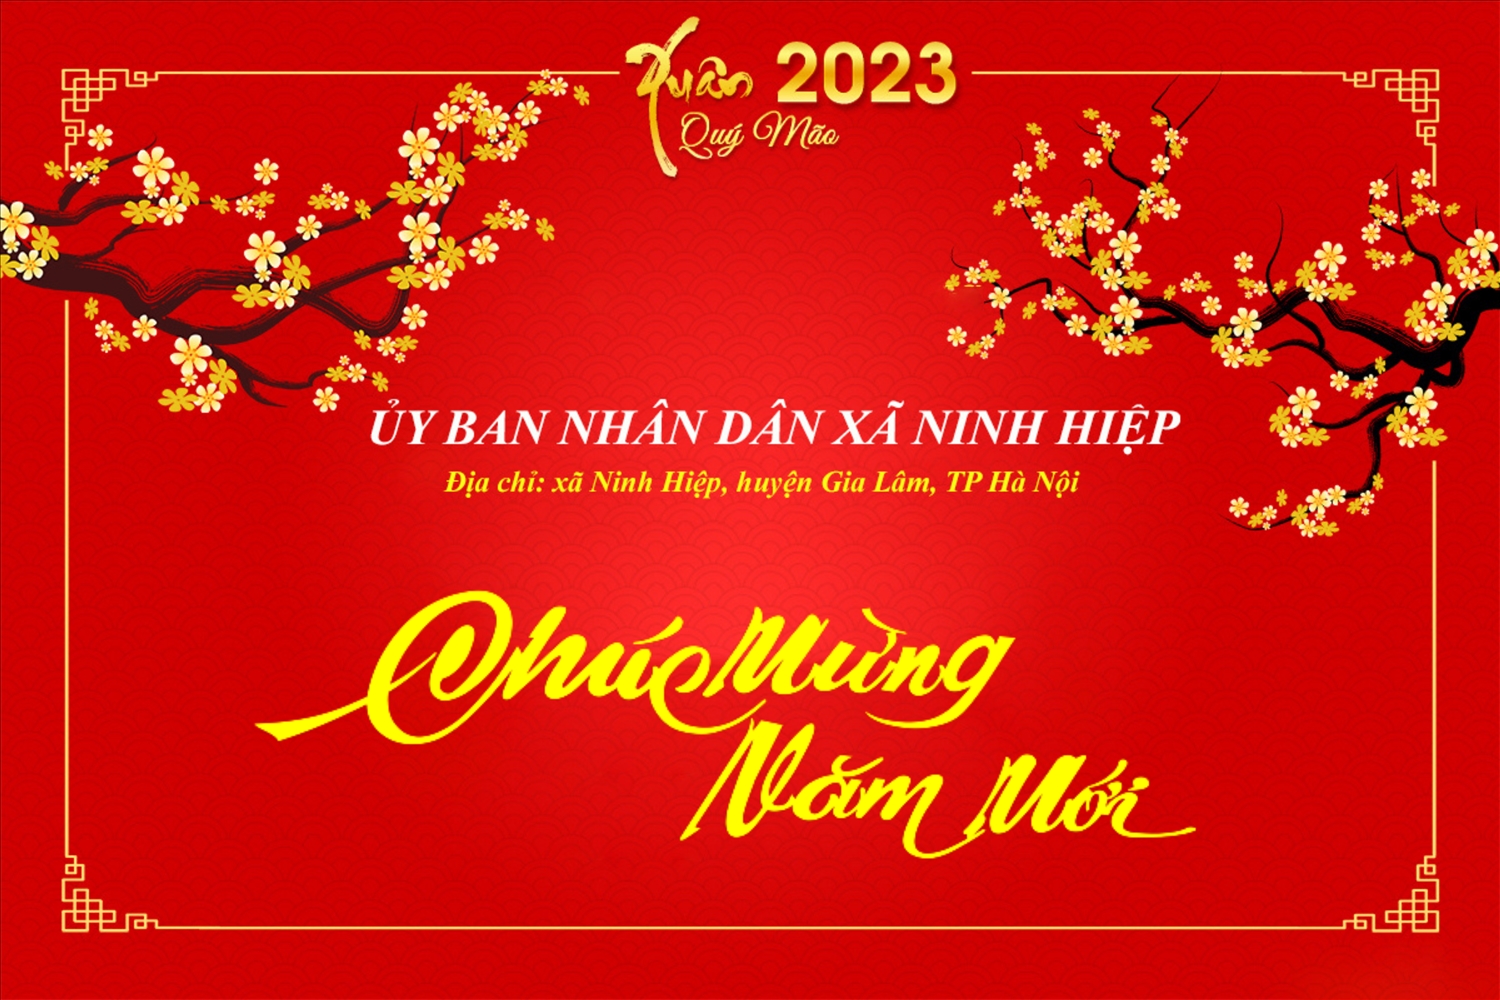 (market qc) Ủy ban Nhân dân xã Ninh Hiệp Chúc mừng năm mới năm 2023